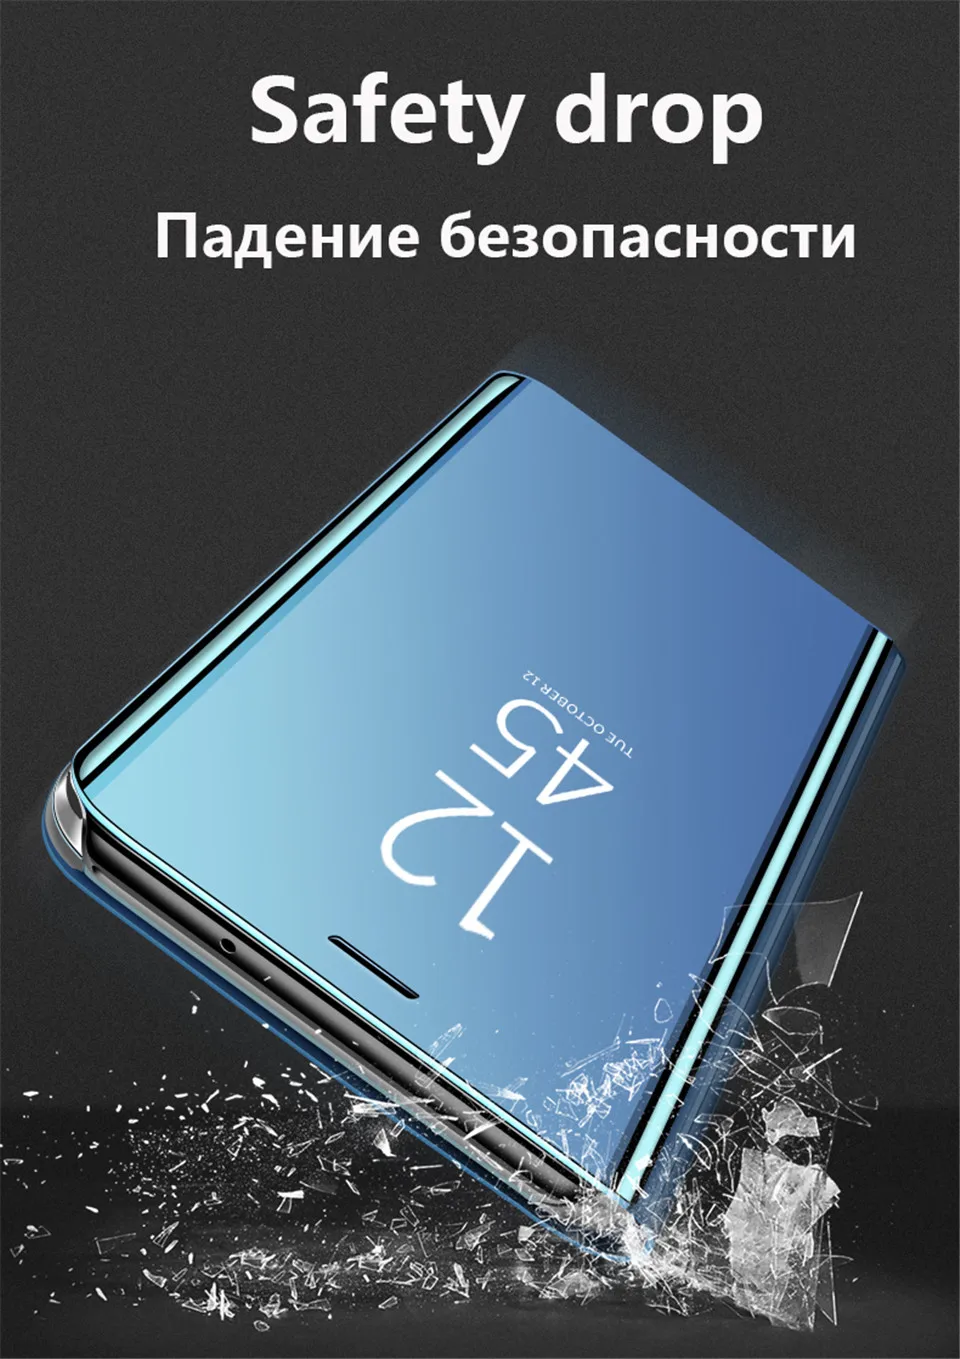 Зеркальный флип-чехол для samsung Galaxy A50 A7 S8 S9 S10 Lite S7 Note 8 9 J8 J6 J4 Plus A20 A30 A40 A70 A90 M20 M10 A10 крышка